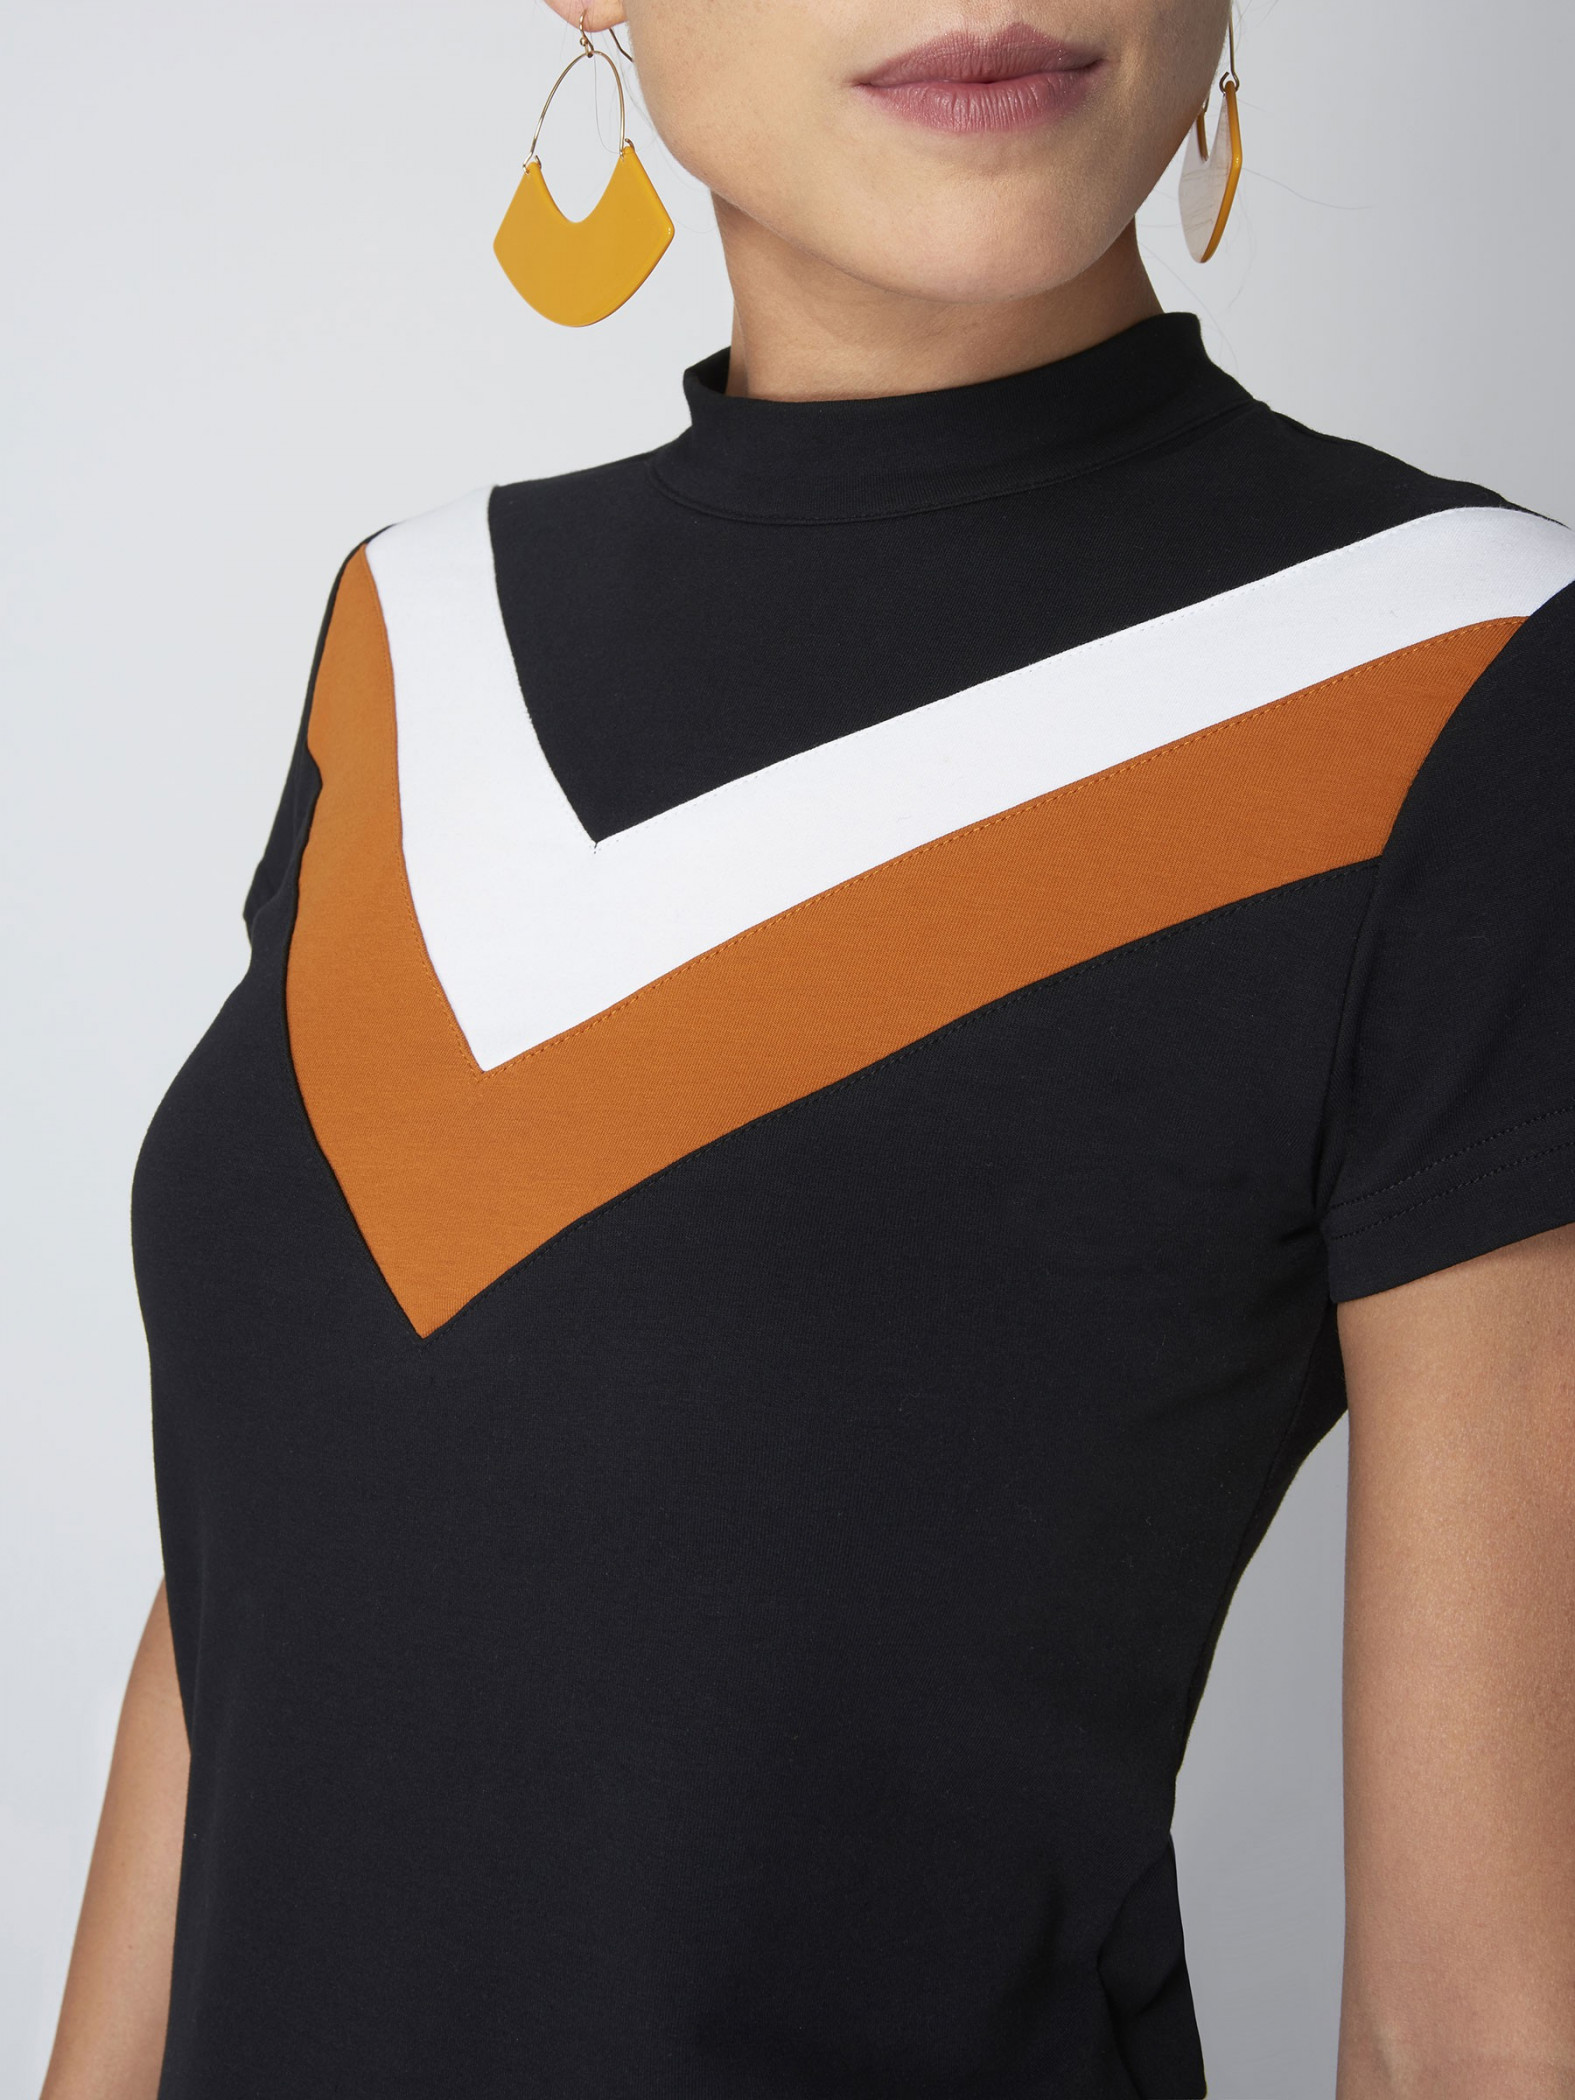 Tee shirt manches courtes color block Femme Project X Paris